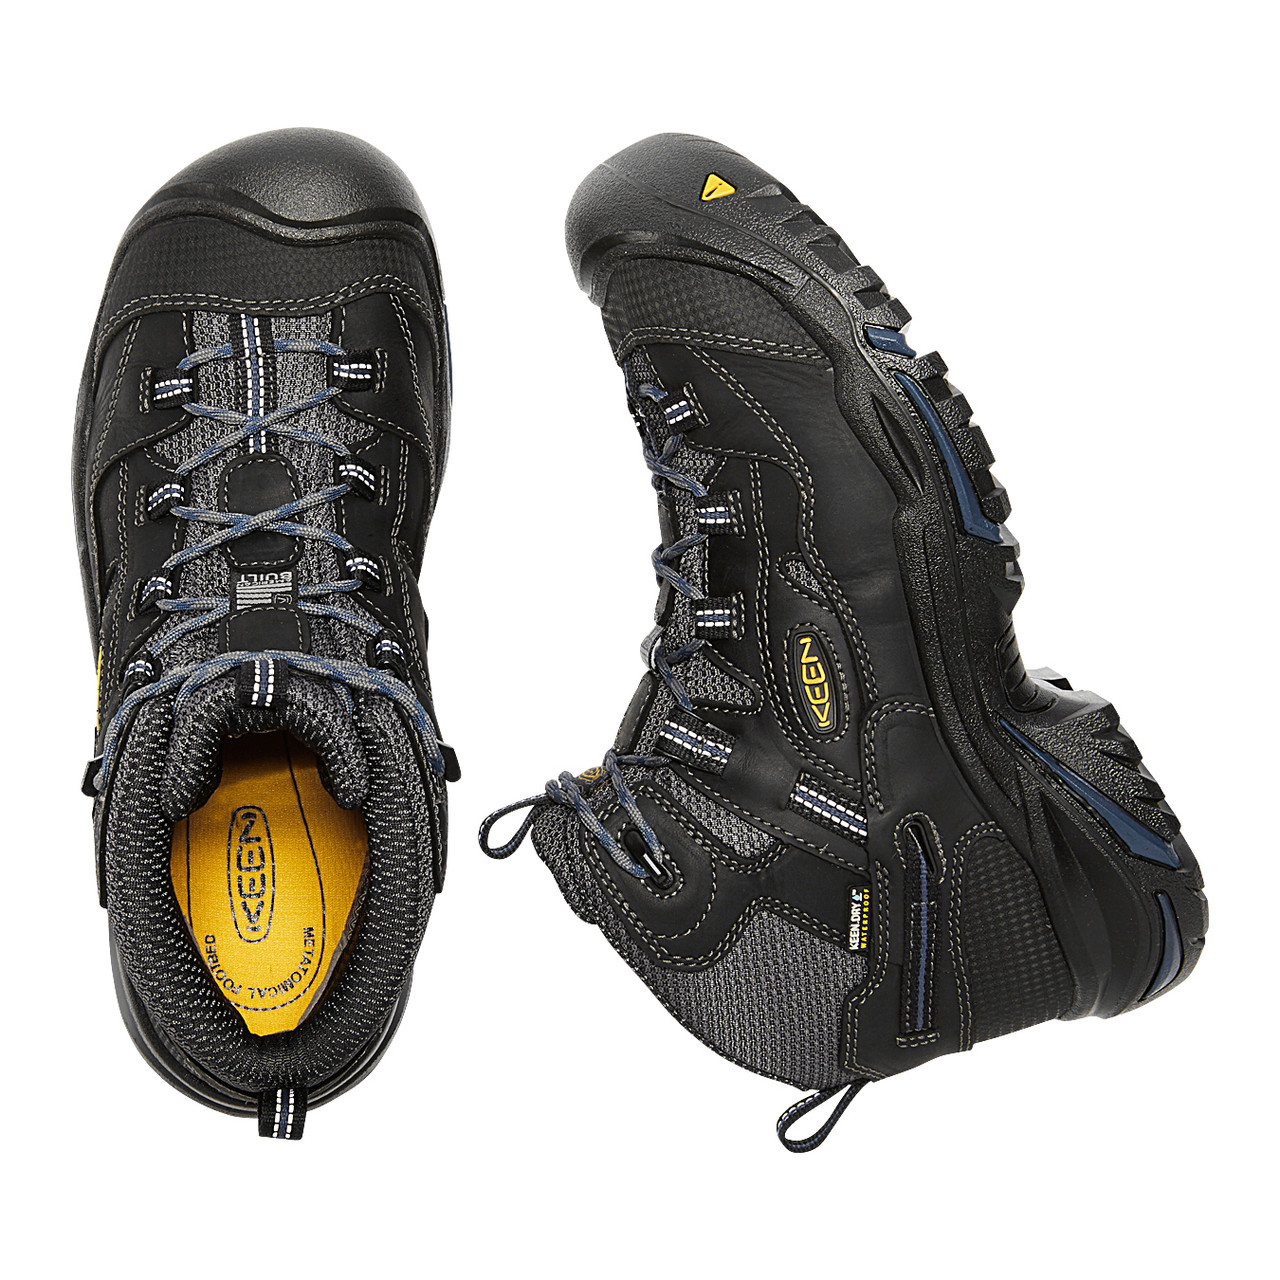 KEEN Utility Braddock #1014605 Men's Mid Waterproof Soft Toe Hiker Work Boot